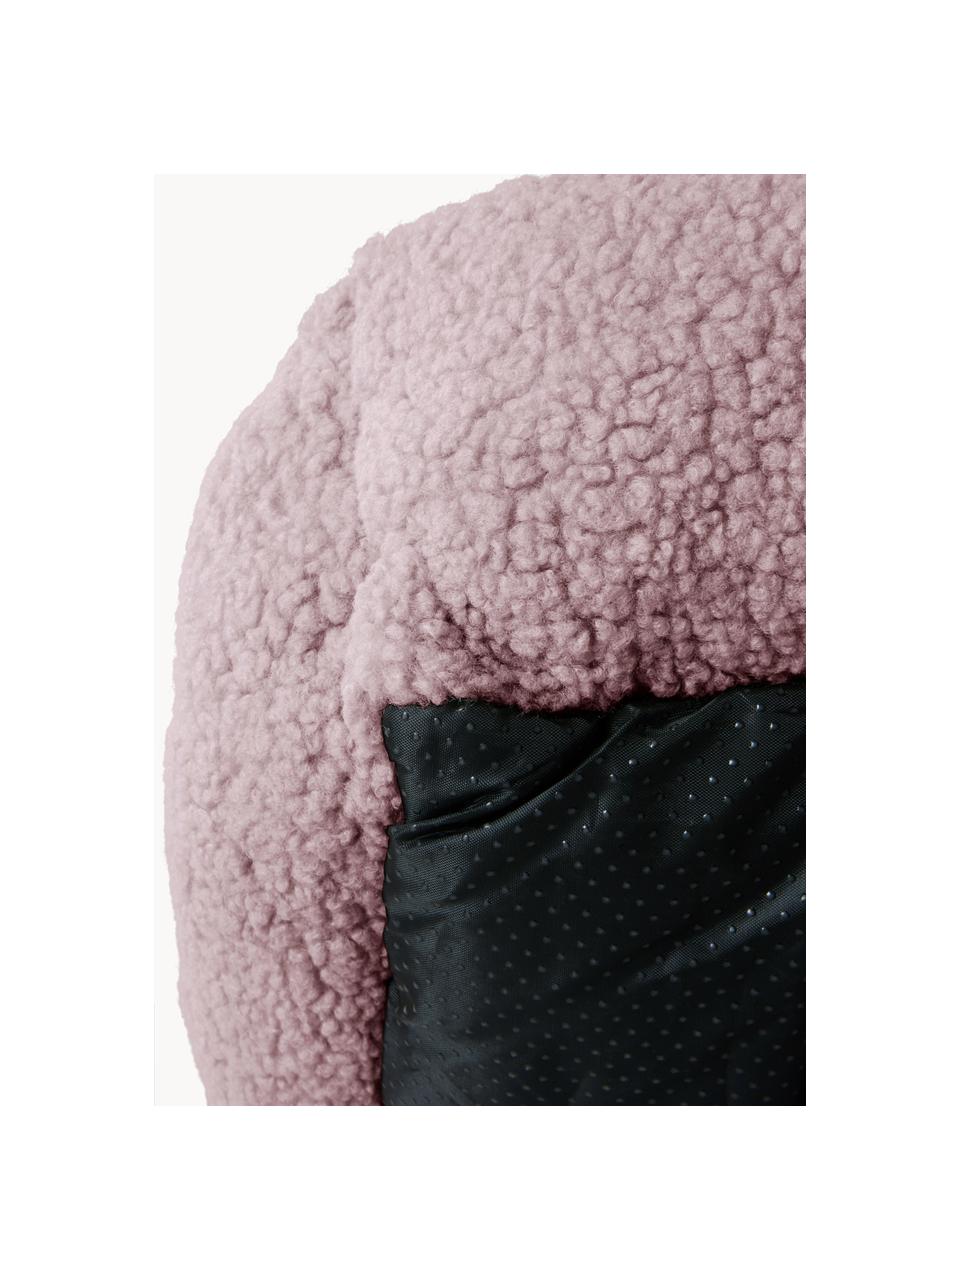 Cama para mascotas de borreguillo Kelsey, Tapizado: tejido bouclé (100% polié, Rosa claro, An 58 x L 78 cm